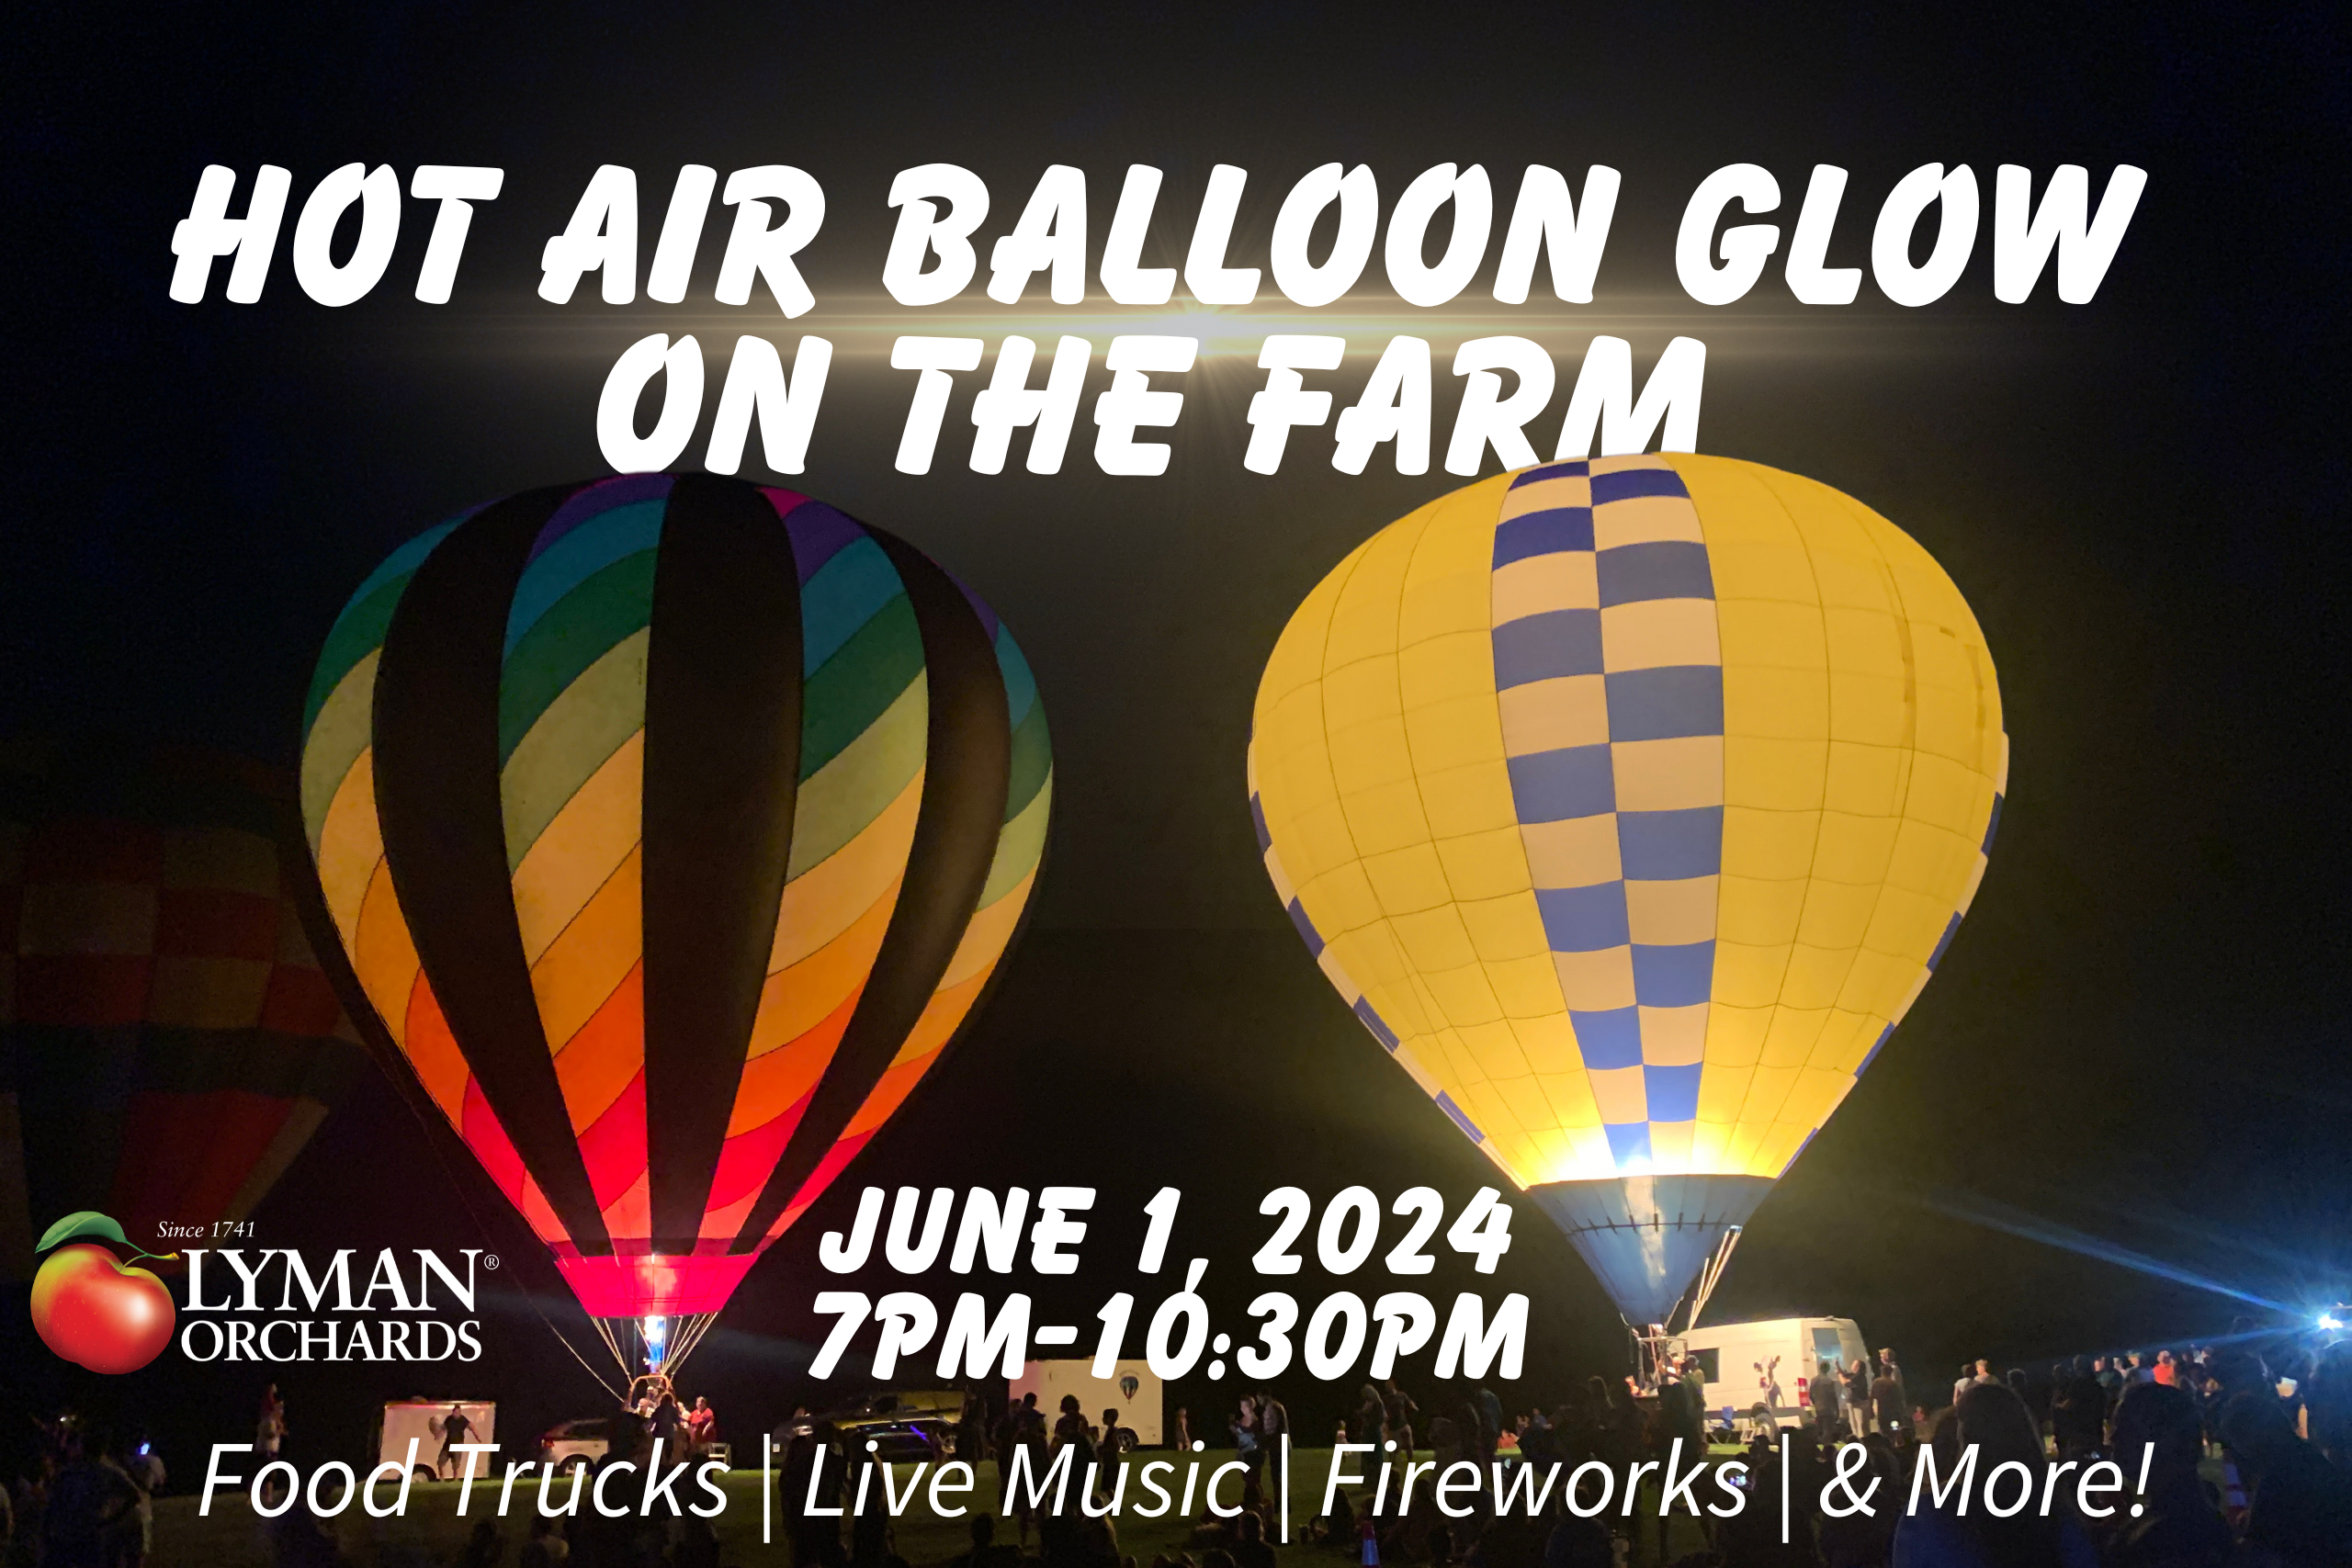 Hot Air Balloon Glow at Lyman Orchards